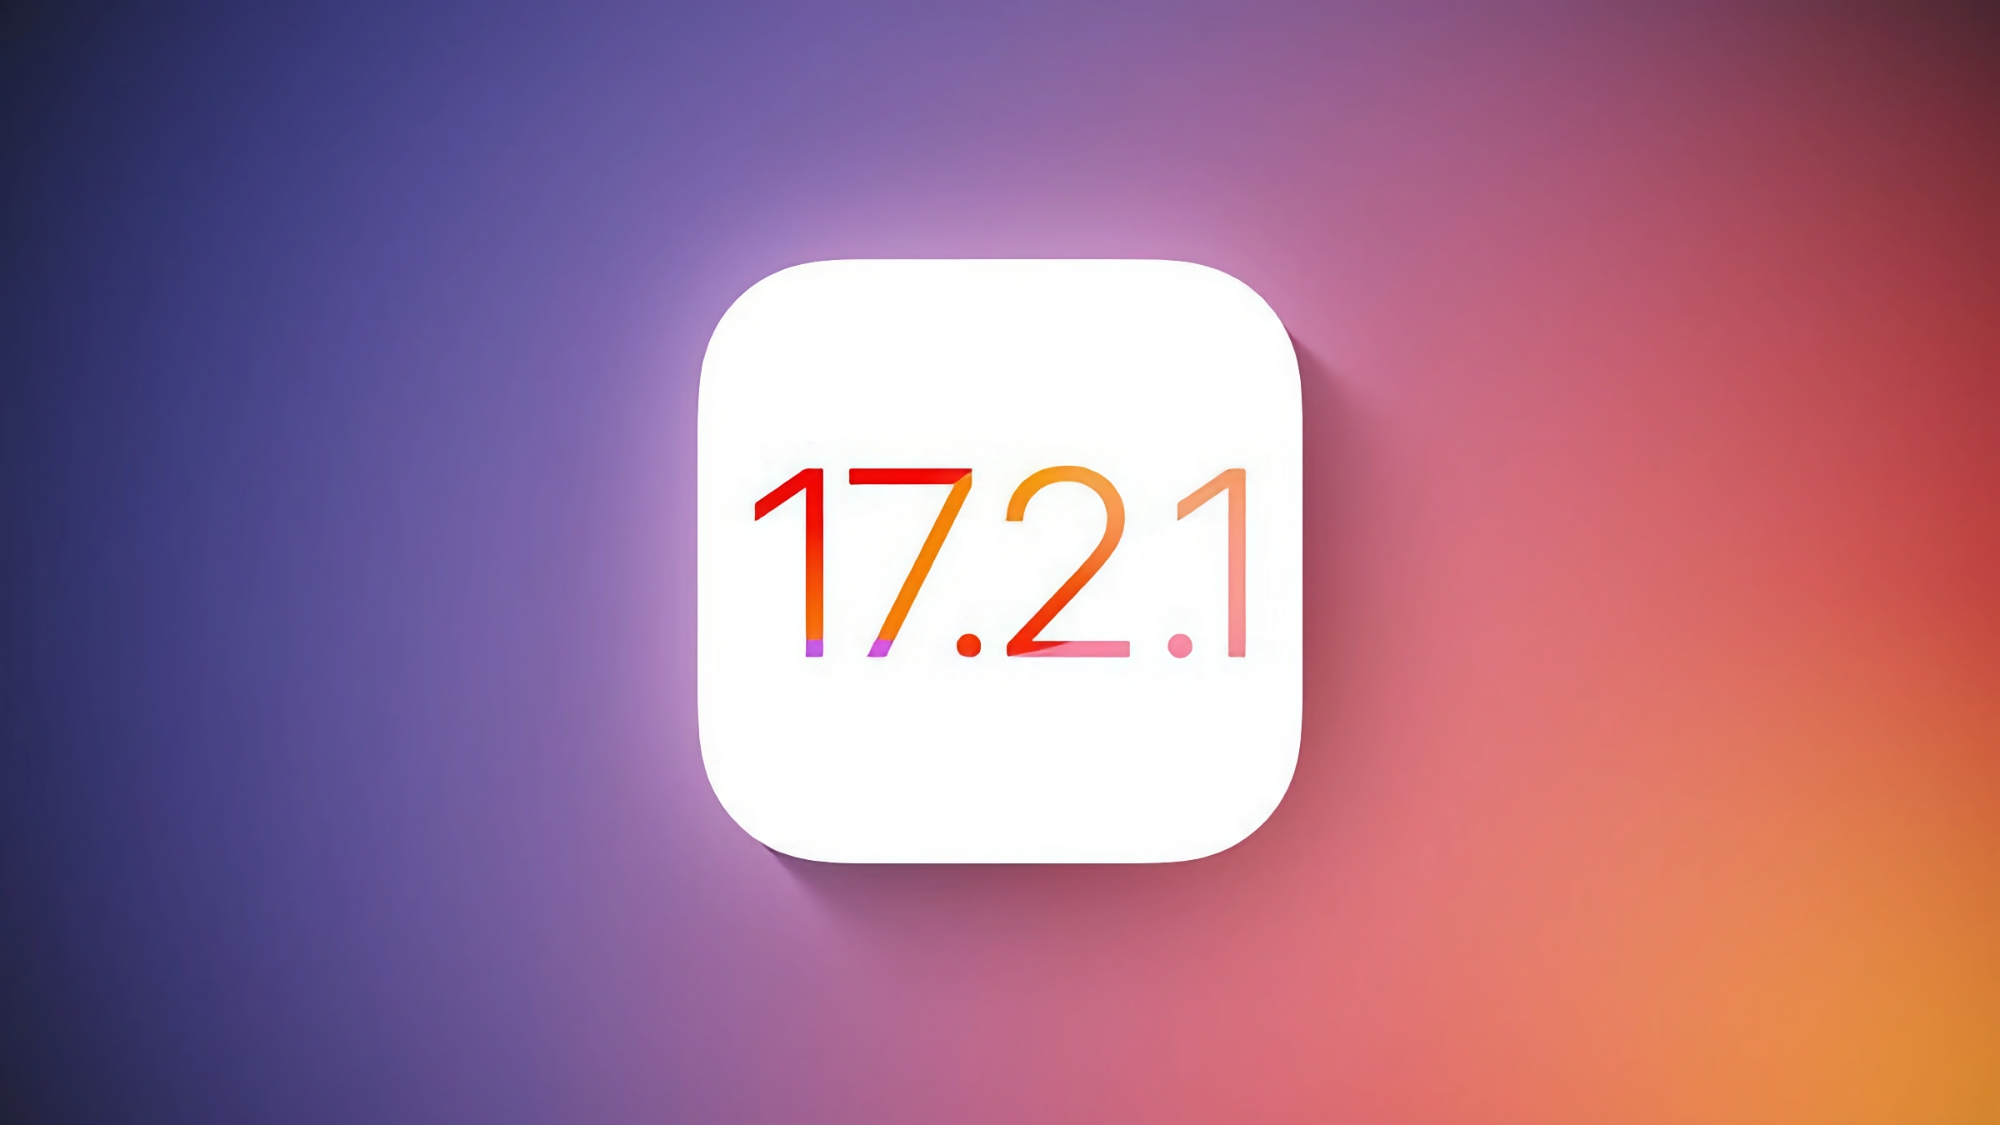 iPhone-användare har börjat få iOS 17.2.1 med buggfixar